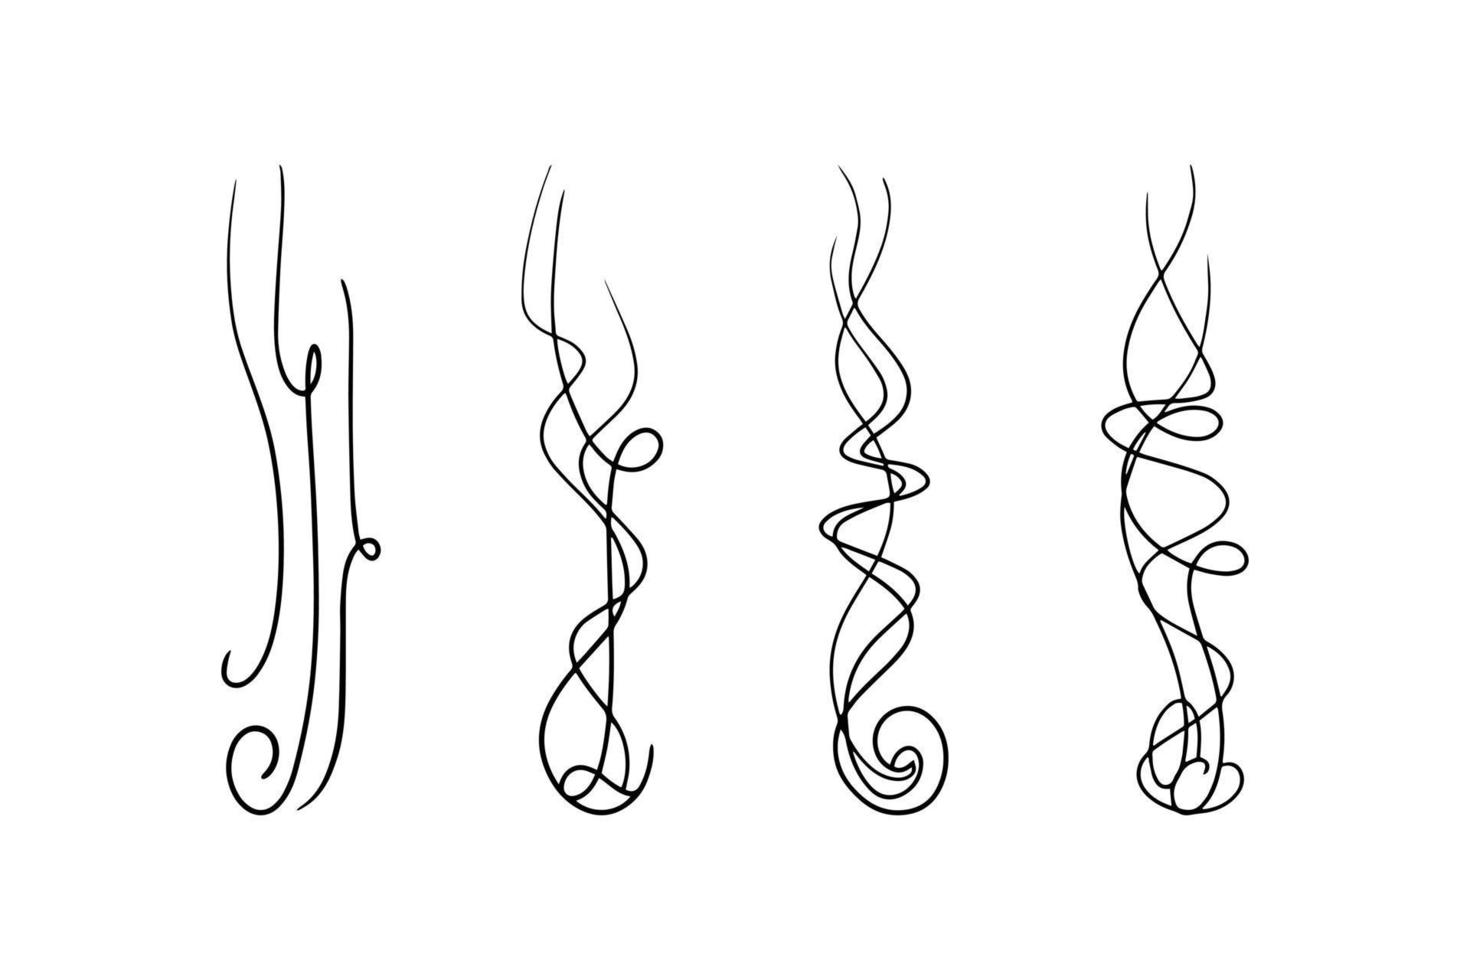 Symbolsatz für Rauch- oder Duftdampflinie. Vektor-Illustration vektor